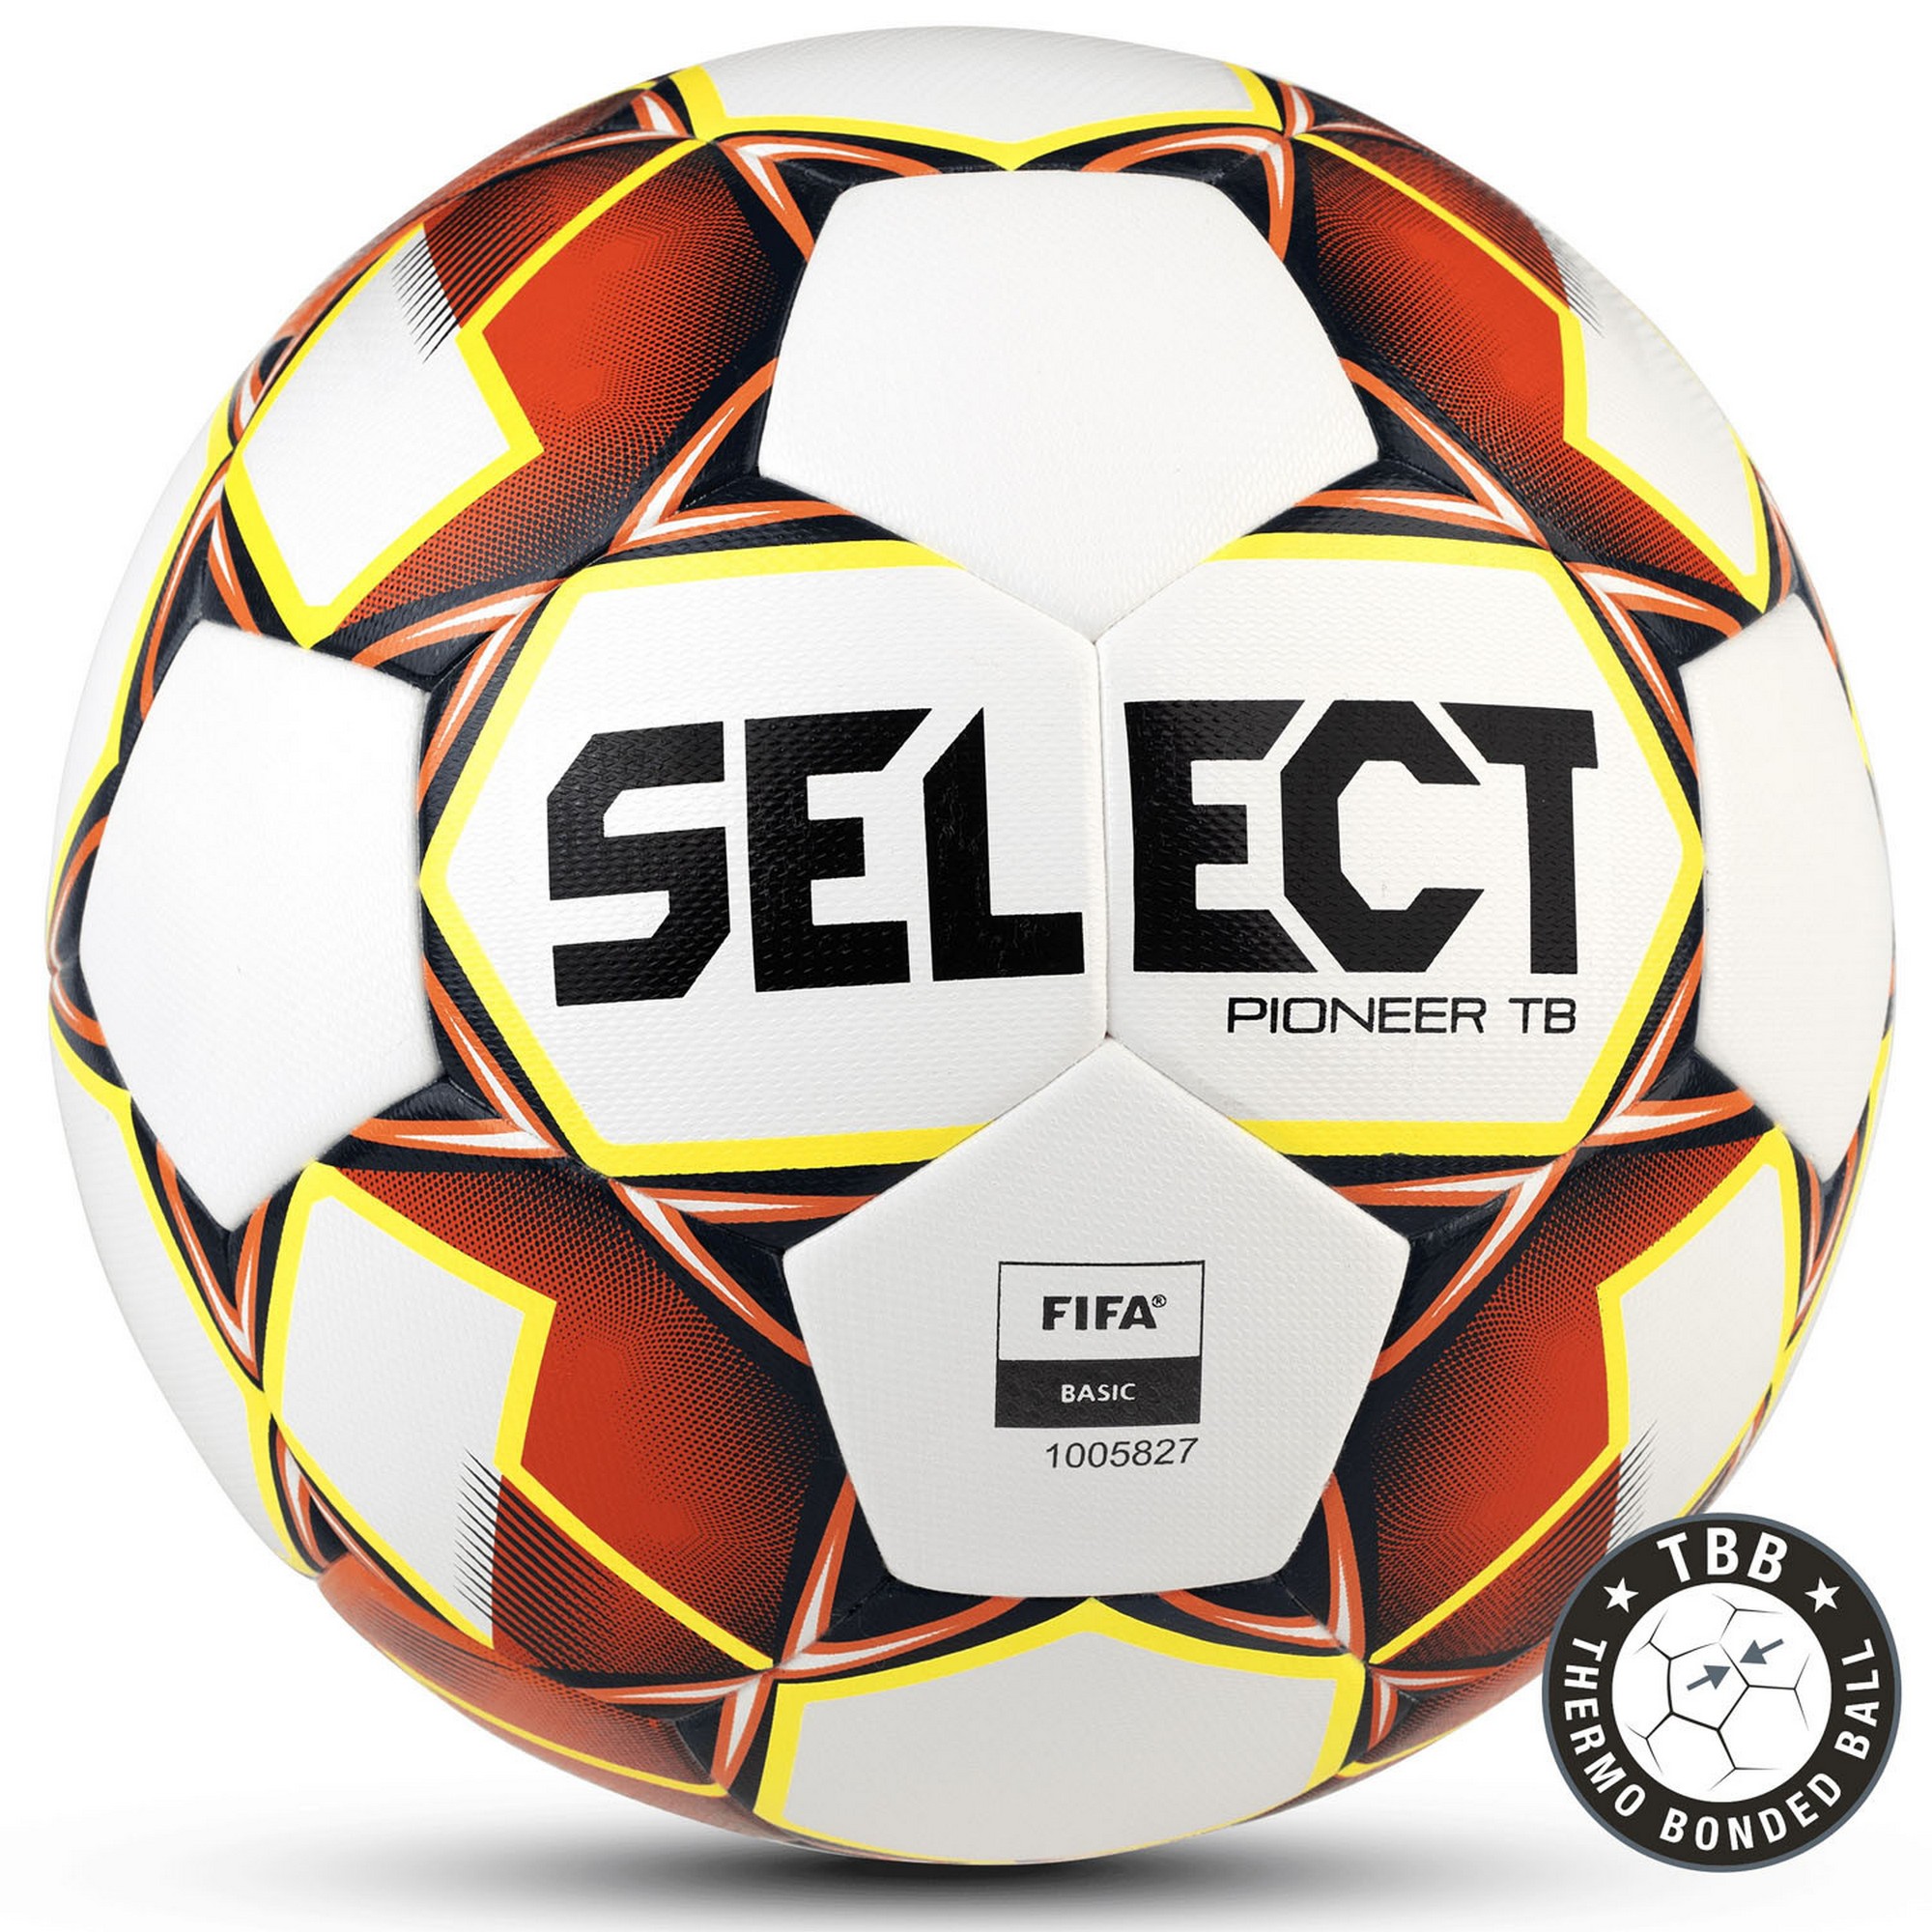 Купить Мяч футбольный Select Pioneer TB 3875046274 р.5, FIFA Basic,